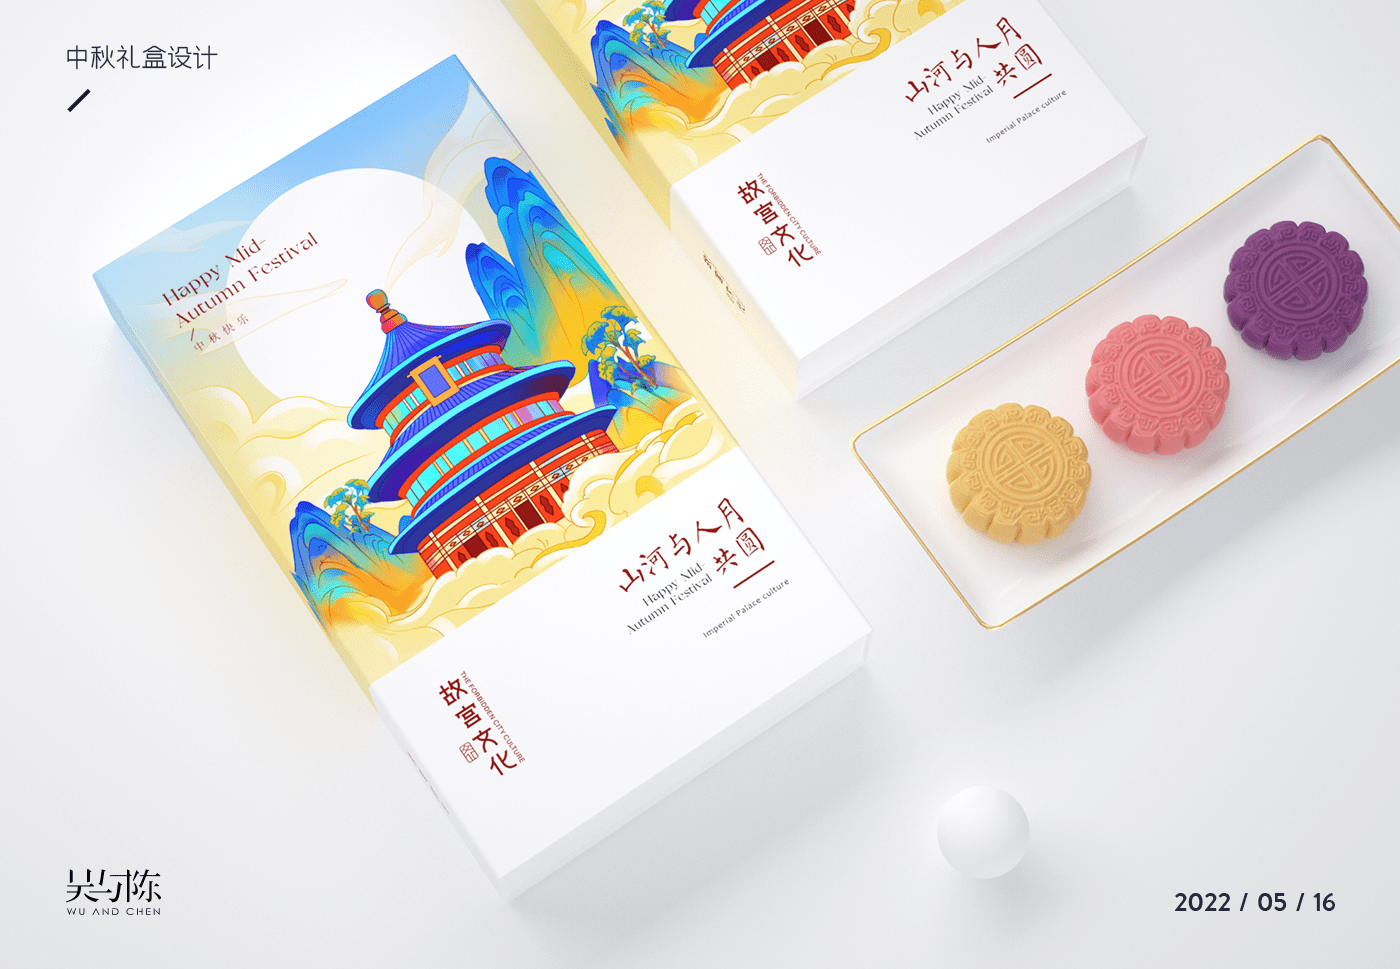 中国风   包装设计 品牌设计 国潮 国风 图形设计 插画 插画包装设计 月饼包装设计 食品包装设计